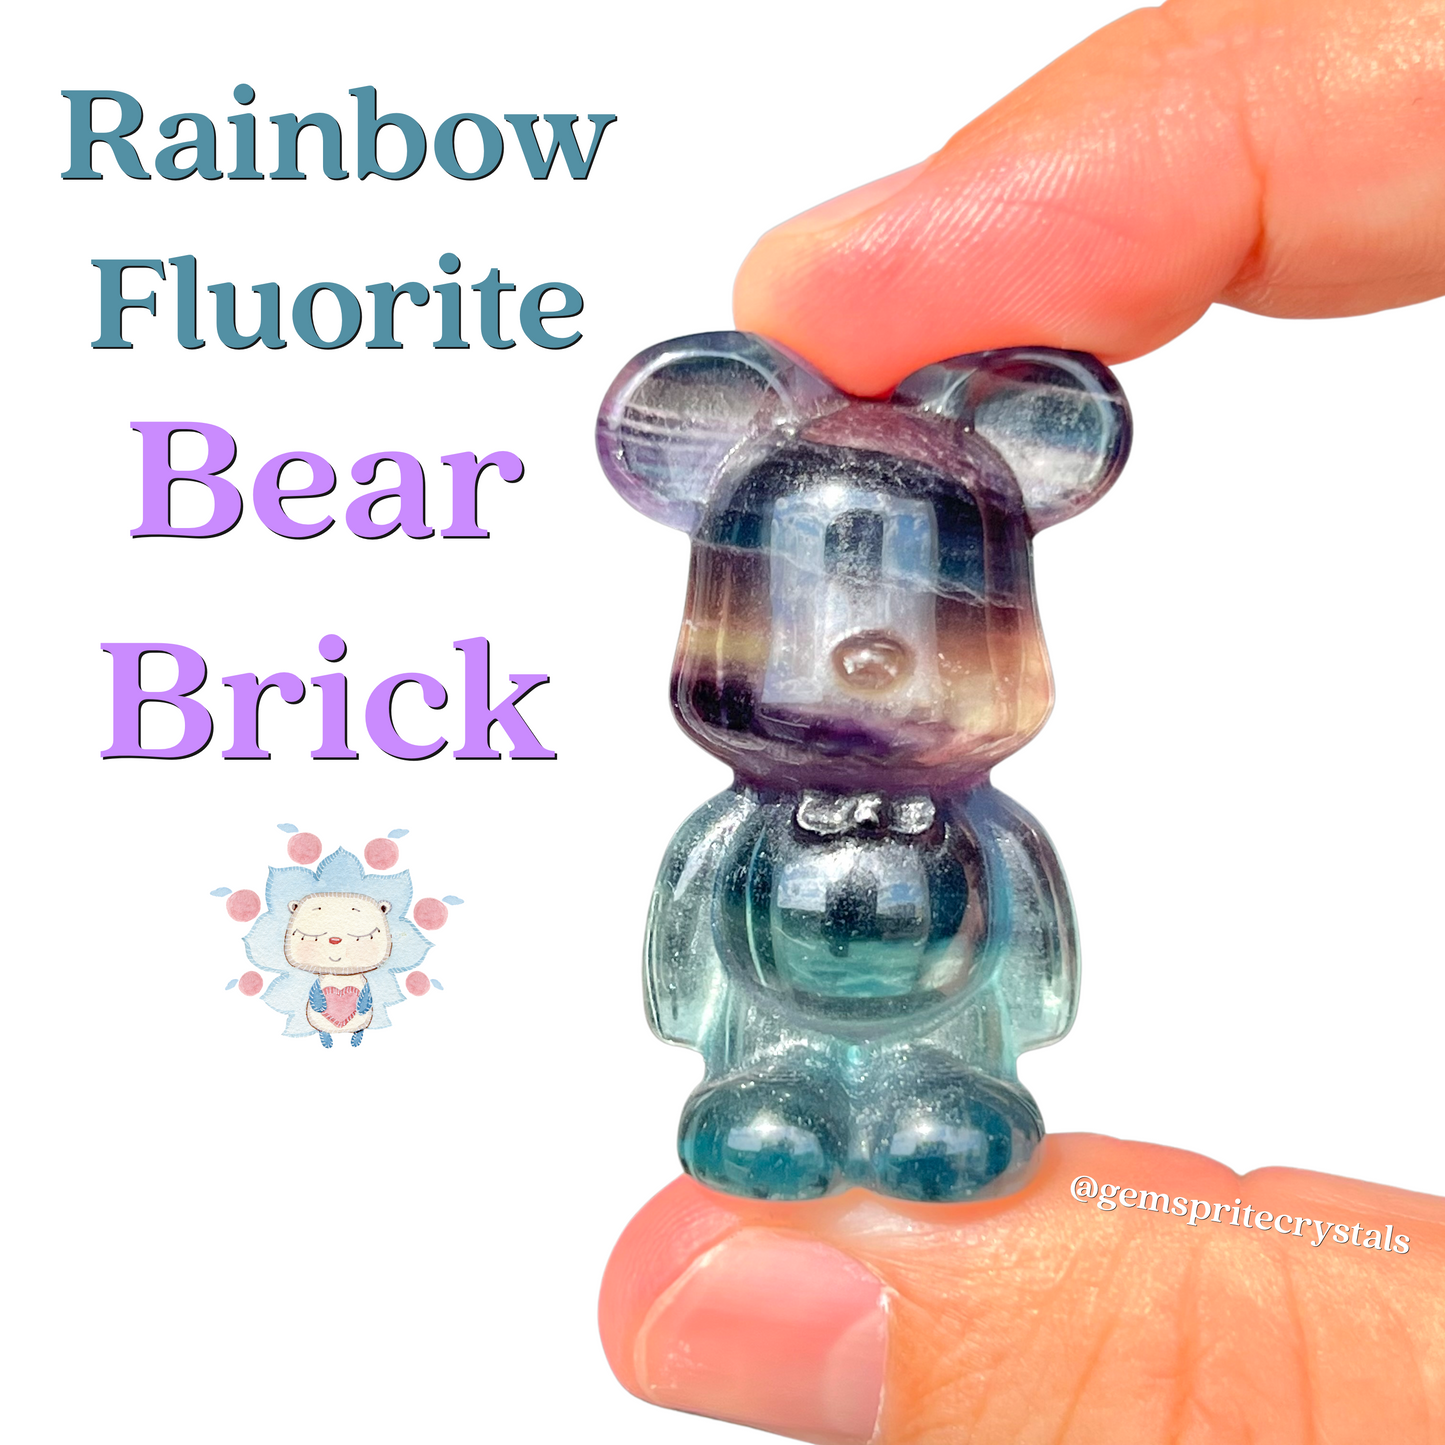 Rainbow Fluorite Bear Brick